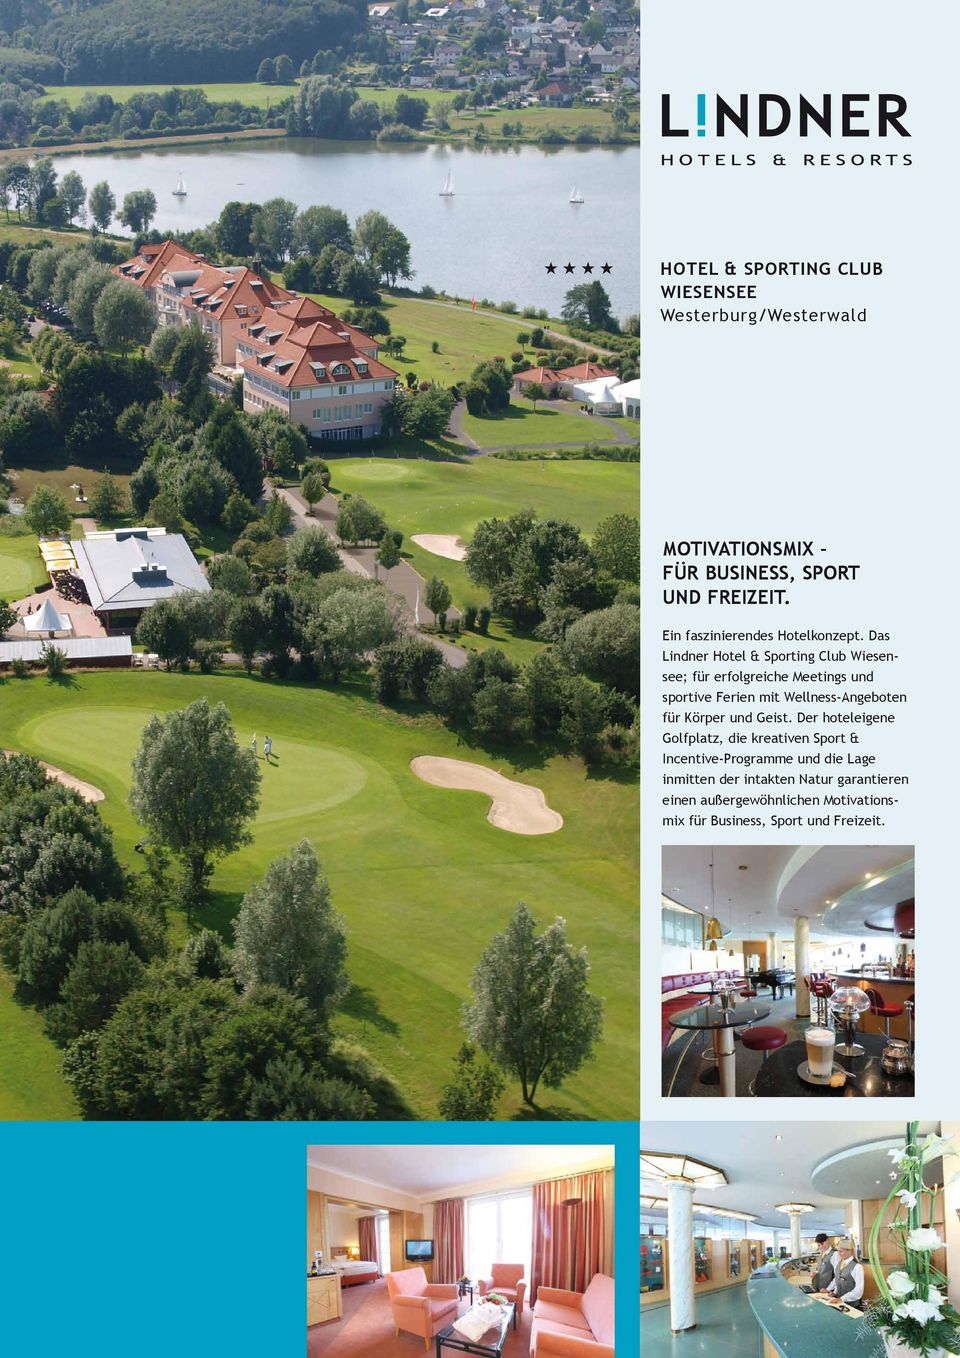 Das Lindner Hotel & Sporting Club Wiesensee; für erfolgreiche Meetings und sportive Ferien mit Wellness-Angeboten